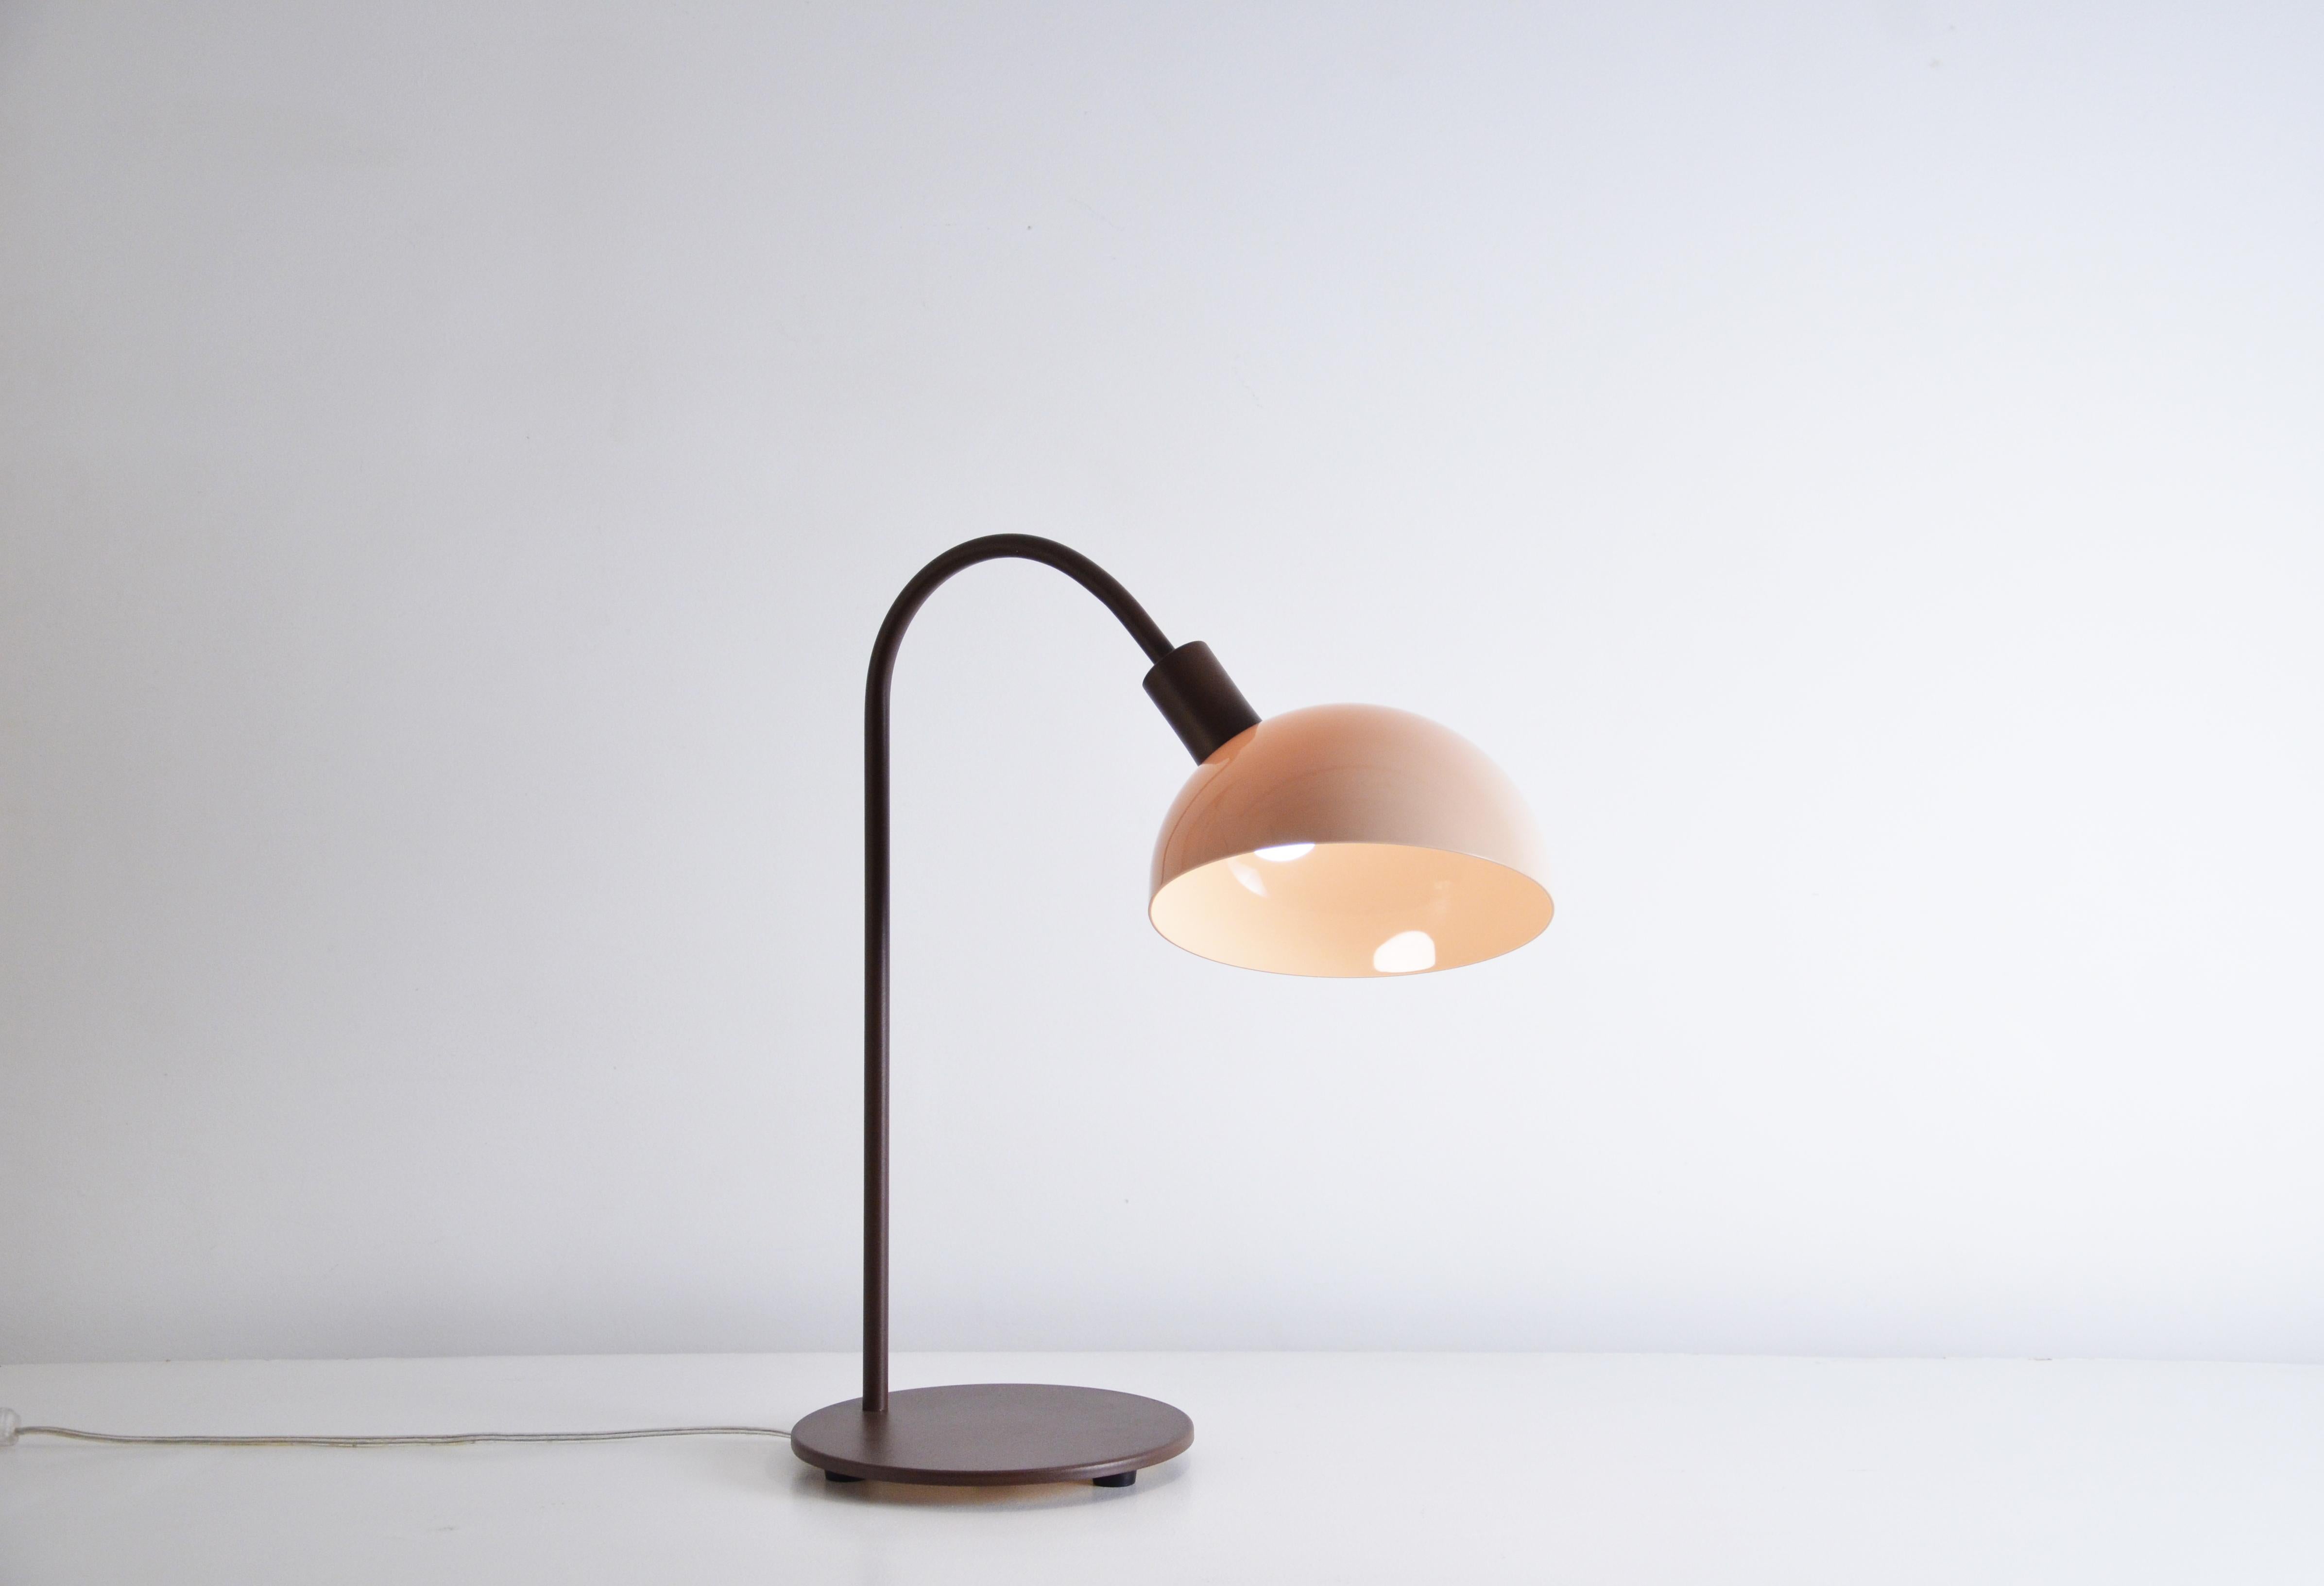 Cette lampe de table s'appelle Lichia. 
Le produit se compose d'un diffuseur acrylique rond et d'une base/structure en acier.
La base est en acier et peut être peinte en blanc, noir ou marron. 
Le diffuseur est en acrylique et peut être dans